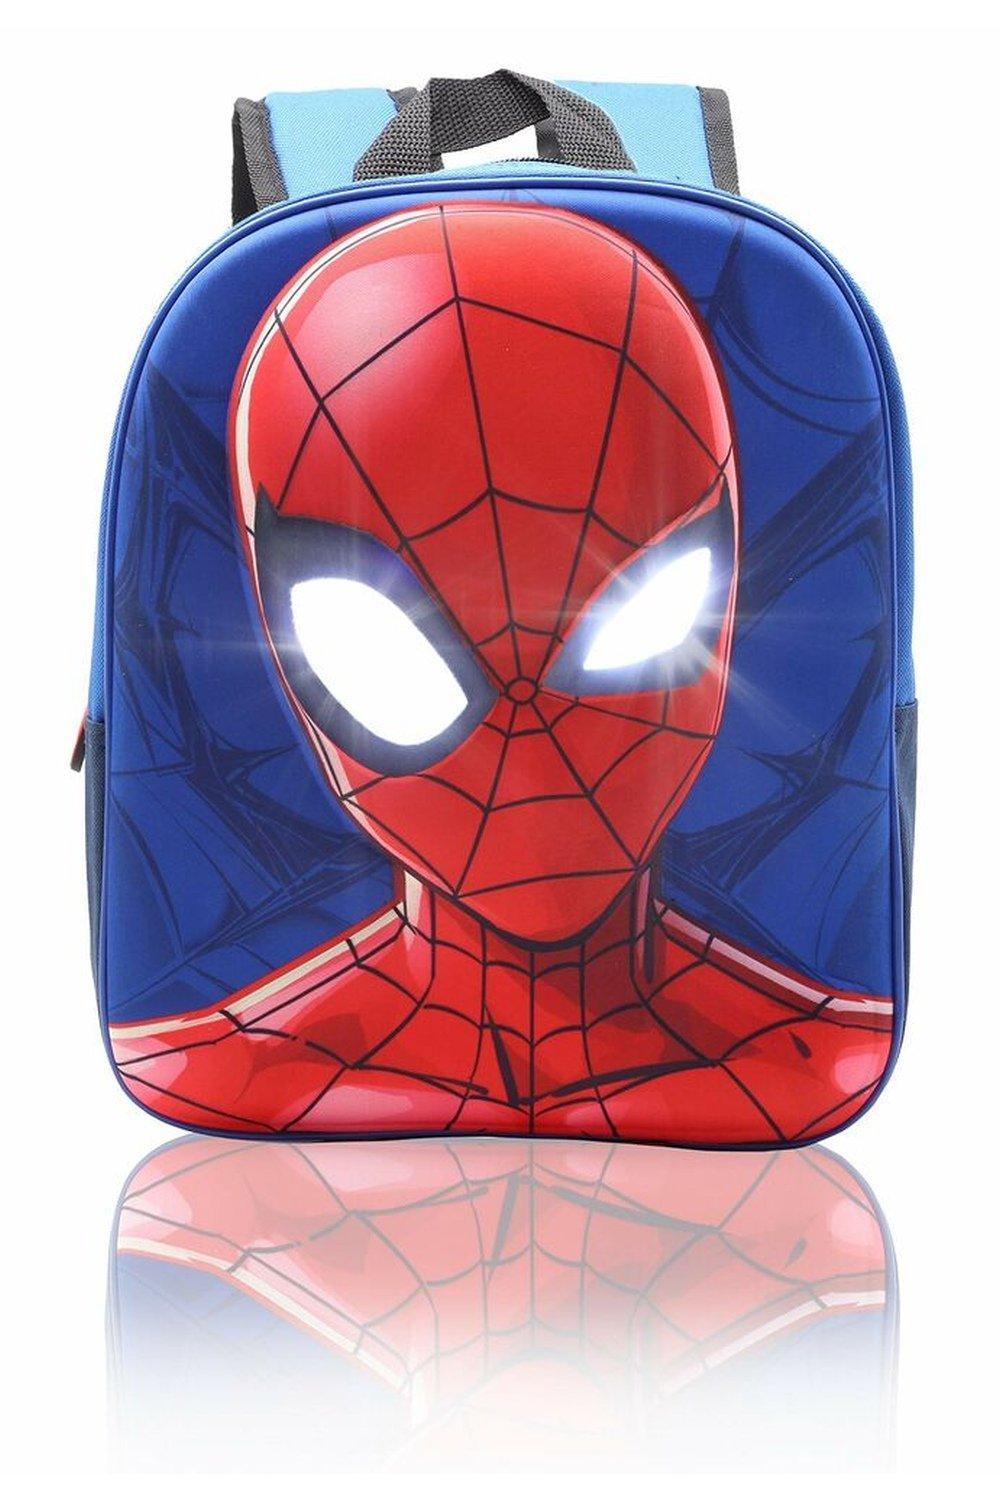 Рюкзак Человека-паука с подсветкой глаз Marvel, синий детский вместительный рюкзак с рисунком русалки и лазера цветной школьный ранец для девочек женская школьная сумка